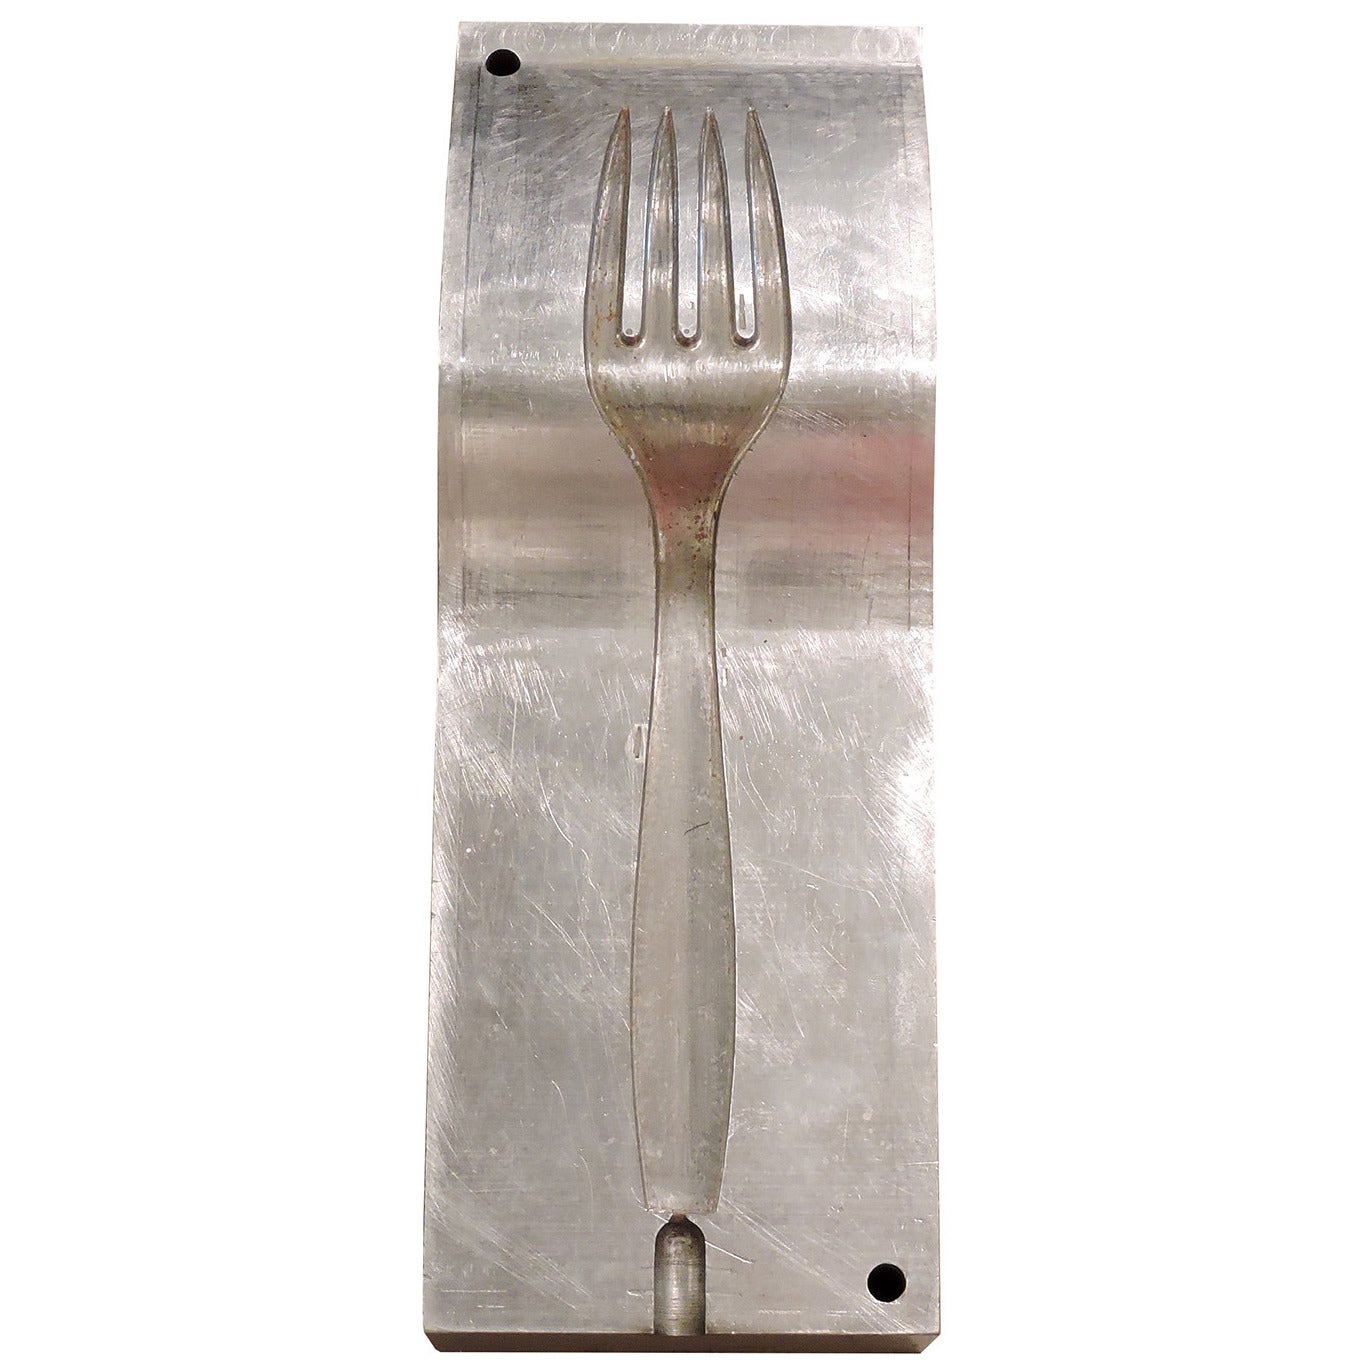 Fantastic Massive Industrial Silverware Serving Fork Die